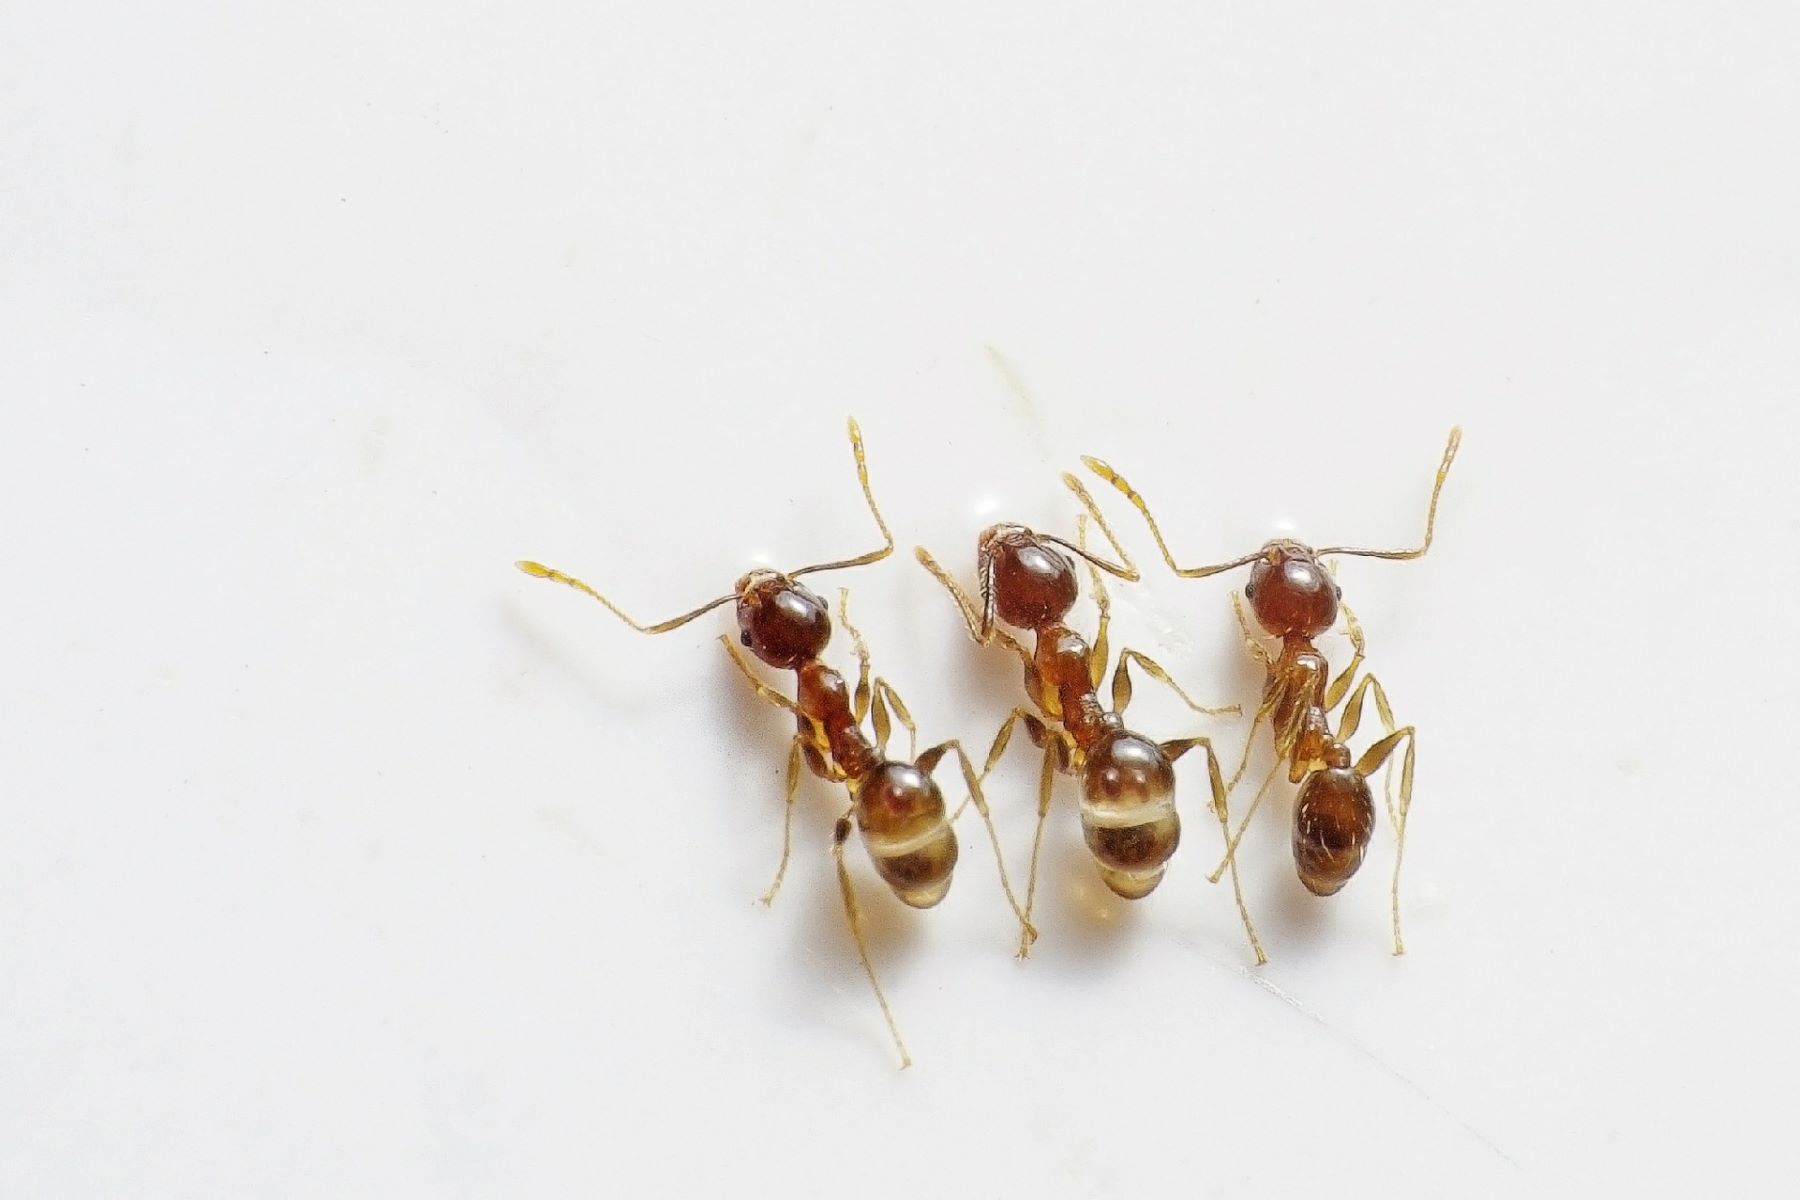 Μυρμήγκια στο σπίτι: Πως να τα καταπολεμήσετε;